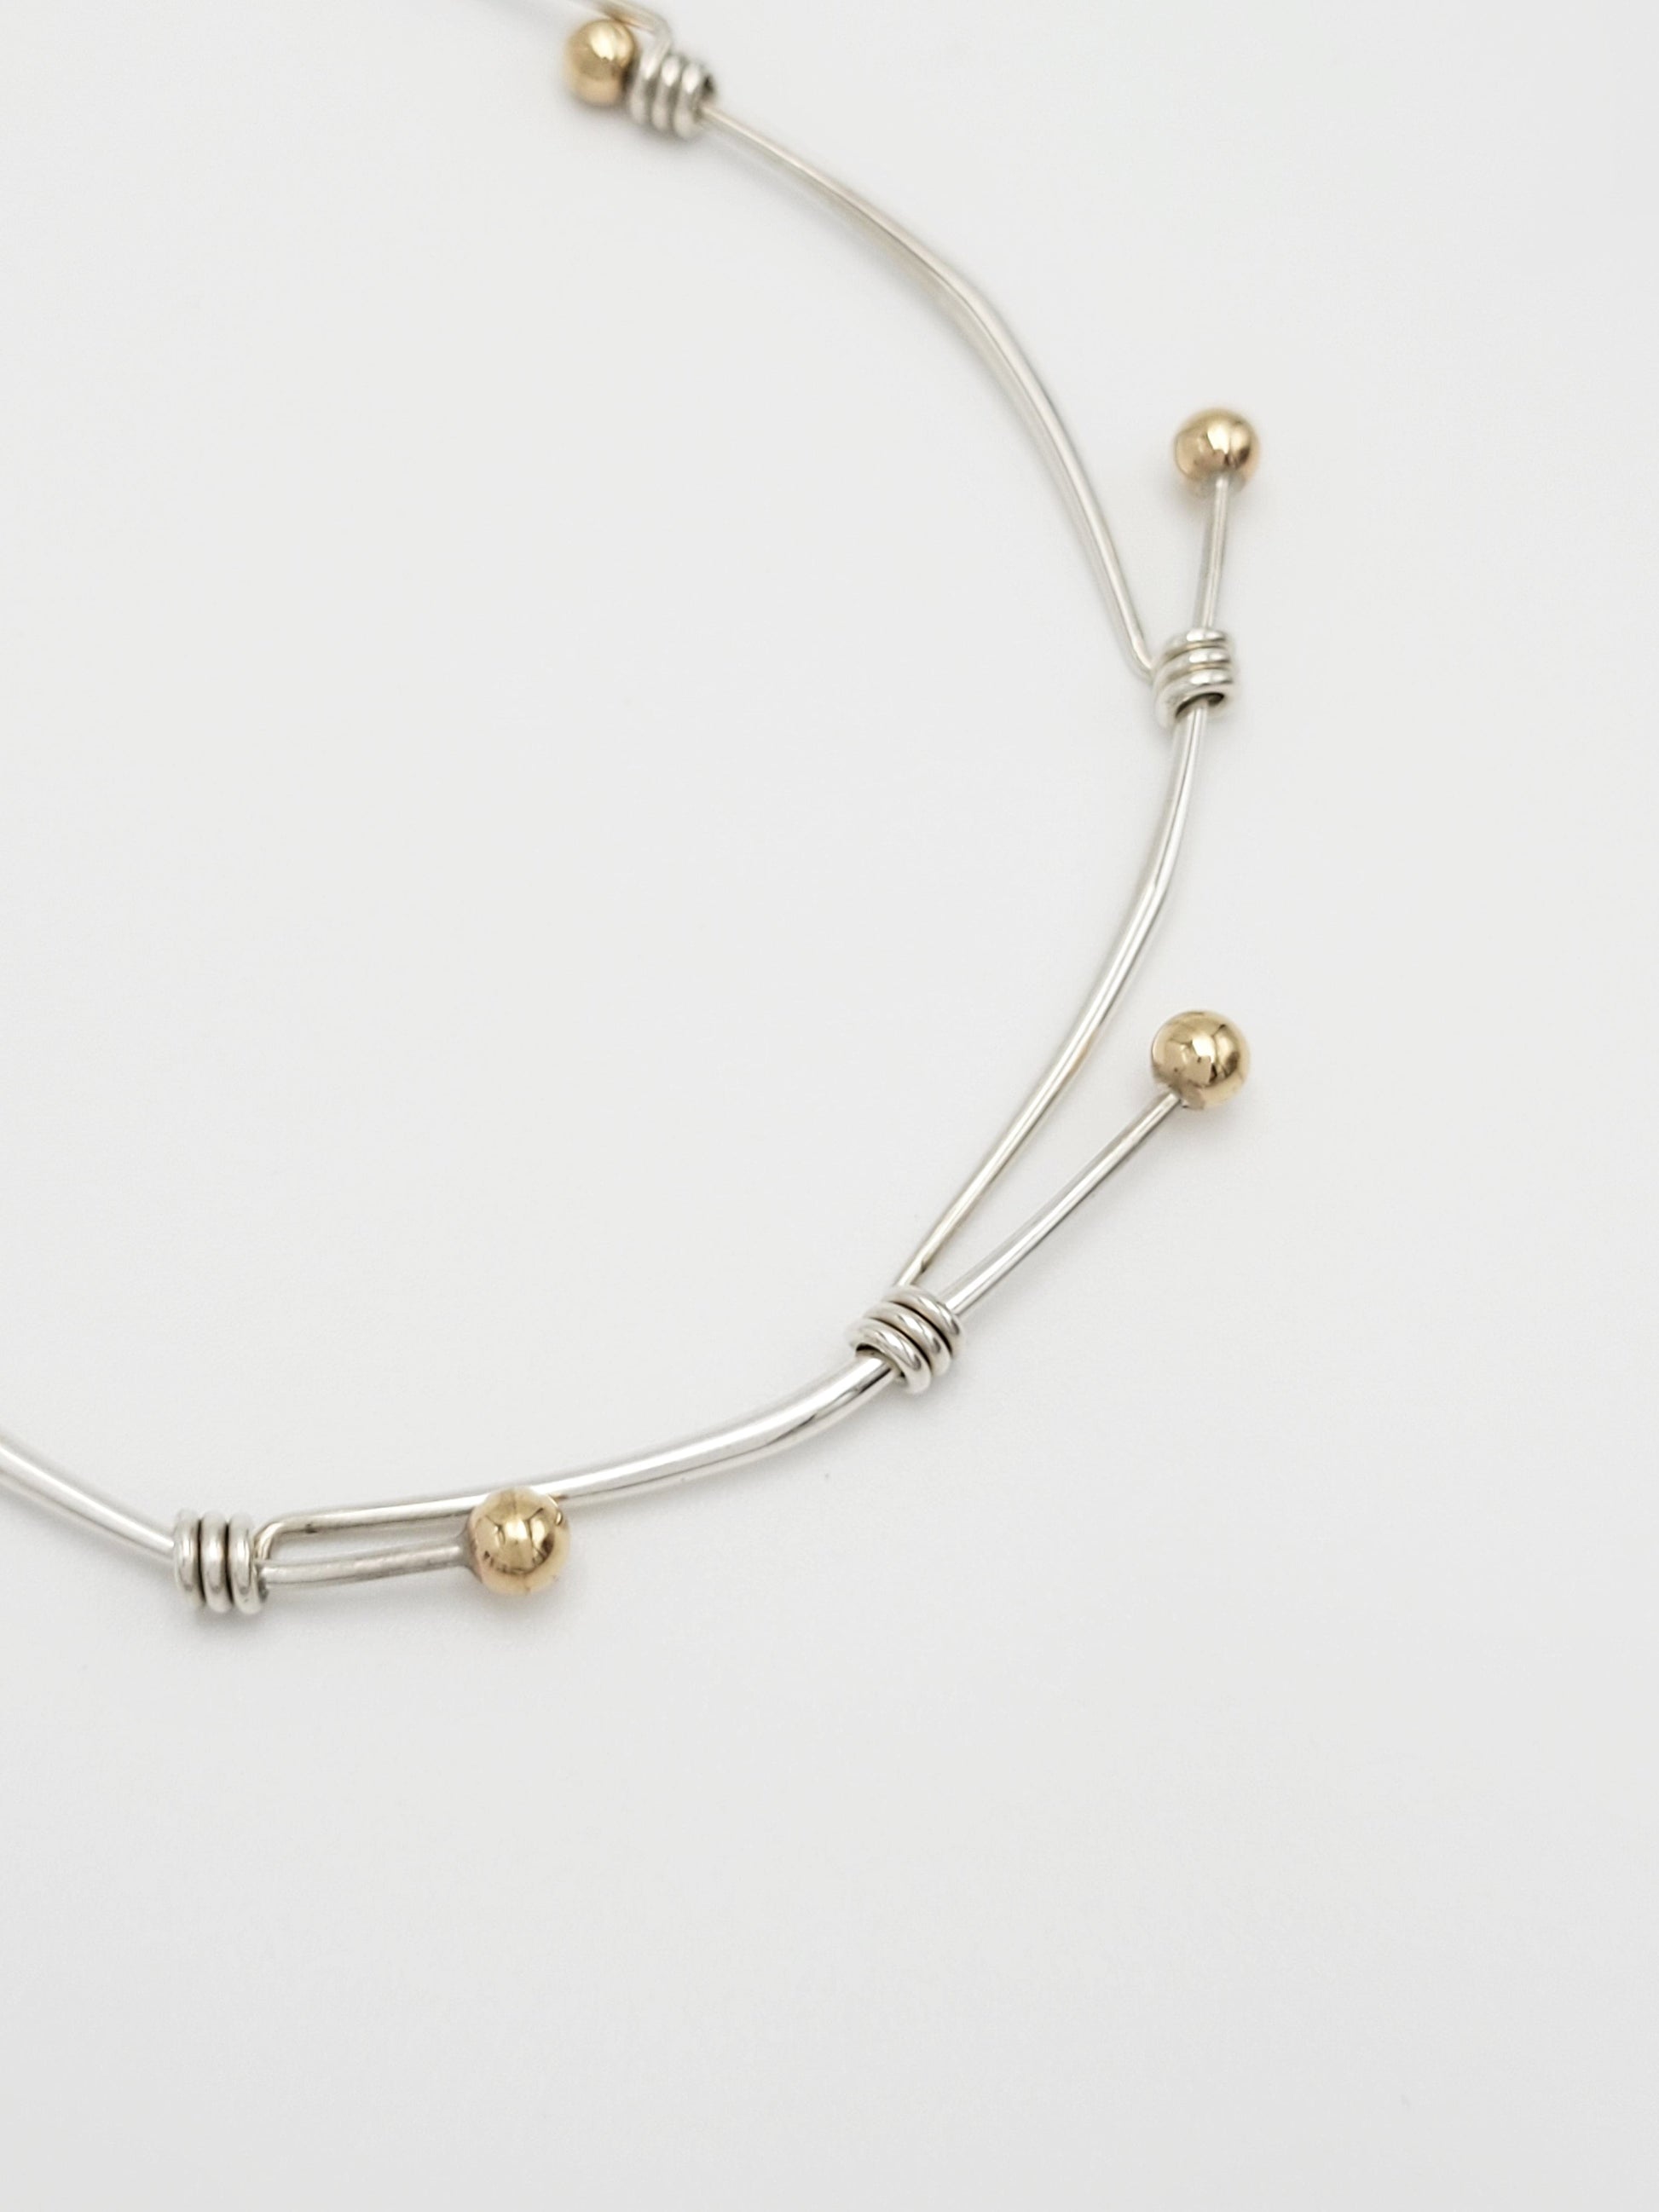 Ed Levin Jewelry Superb Designer Ed Levin Sterling 14K Gold Rare Modernist Slide Bar Necklace